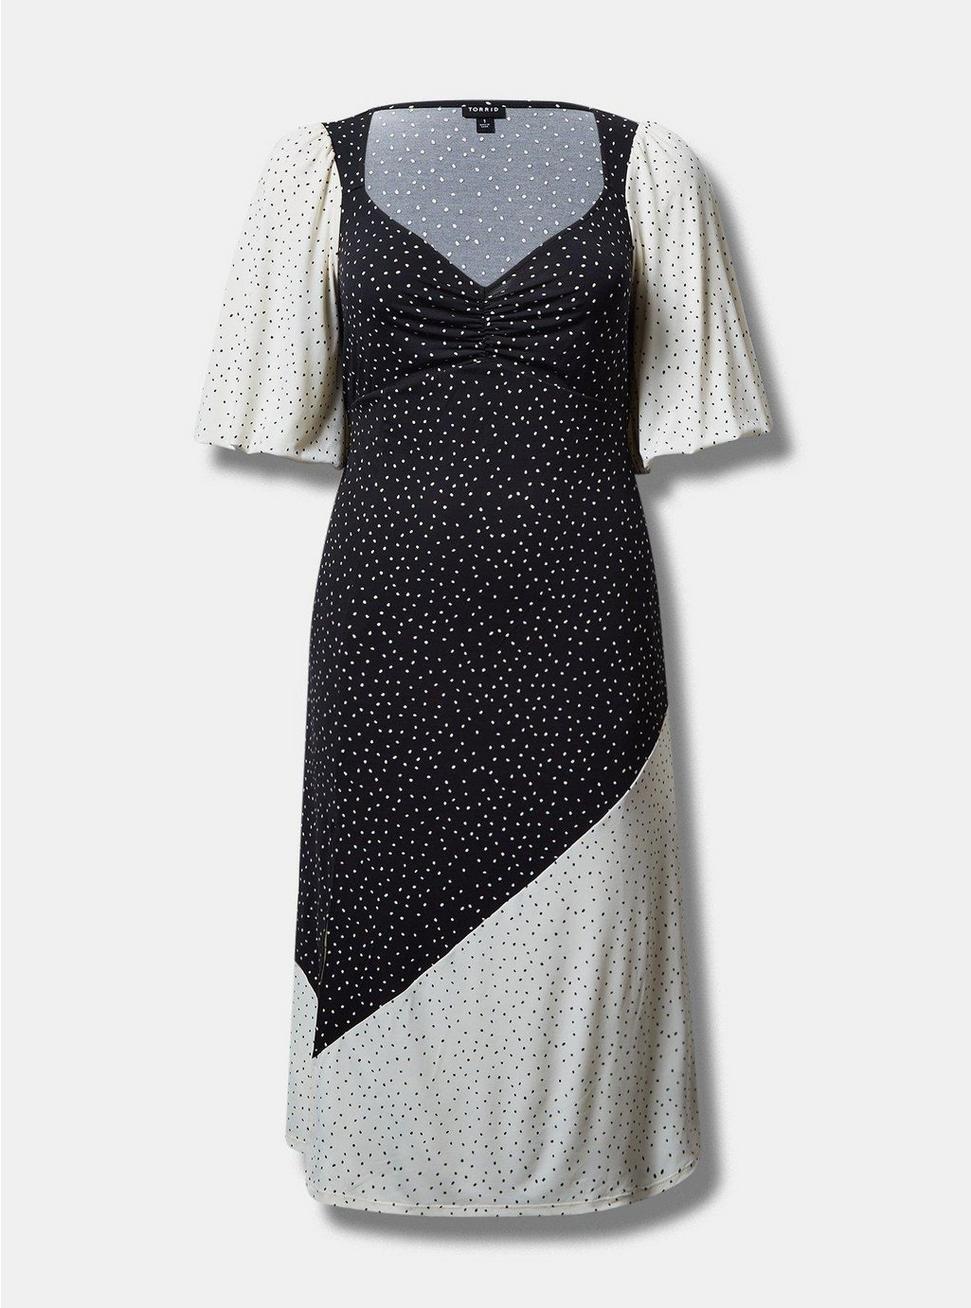 Maxi Studio Knit Mix Print Dress, DOT PRINT, hi-res